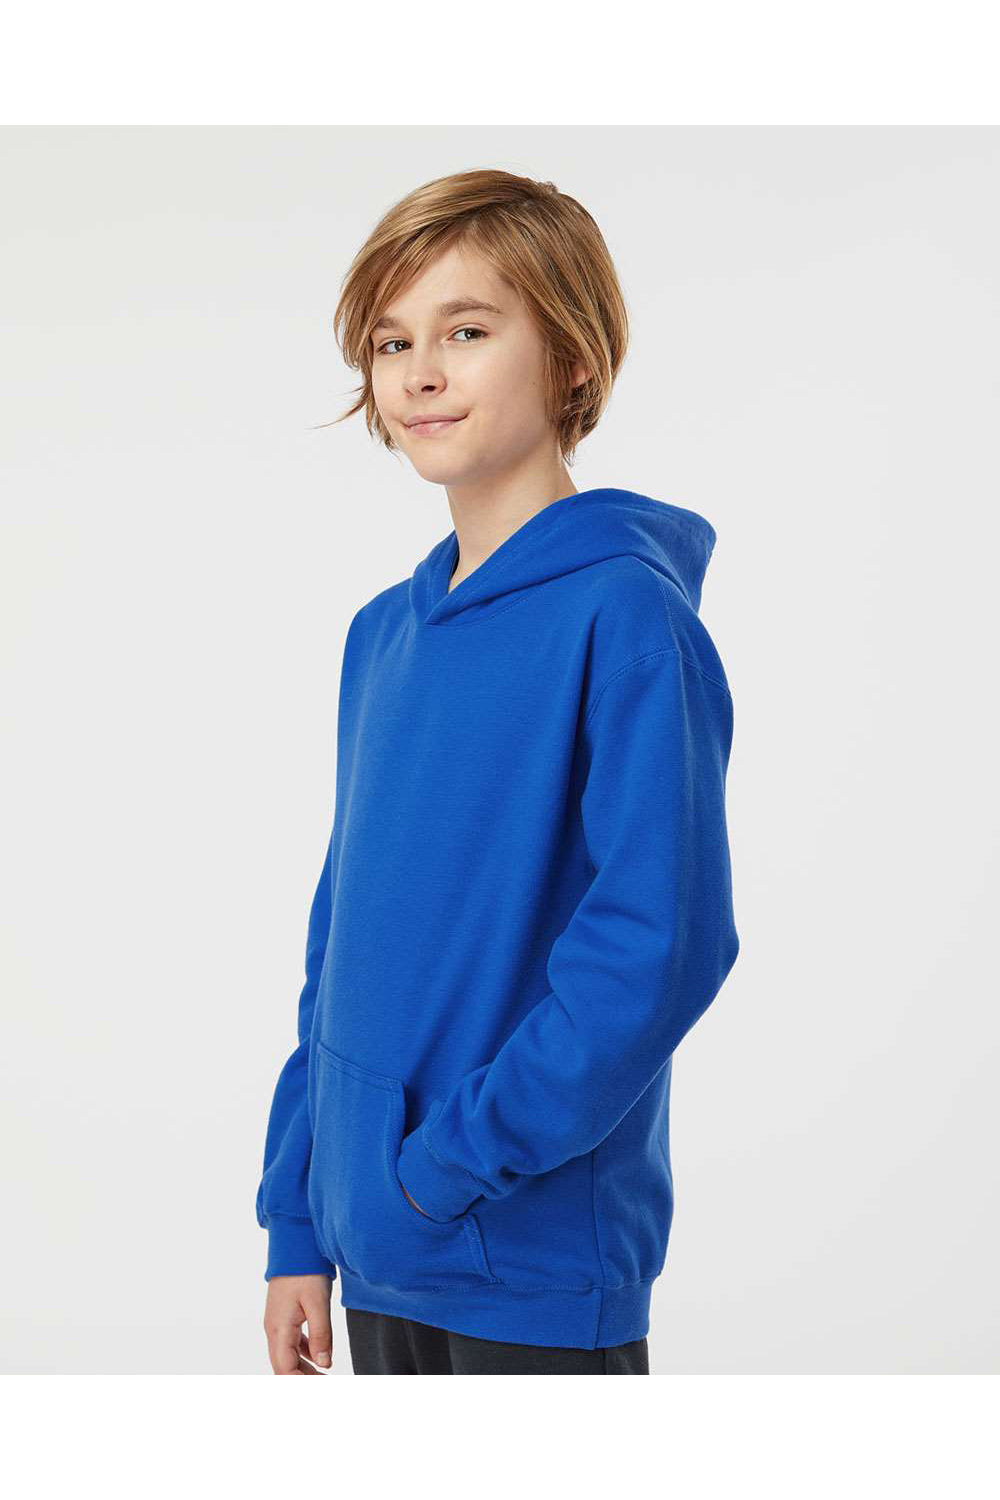 Tultex 320Y Youth Hooded Sweatshirt Hoodie Royal Blue Model Side